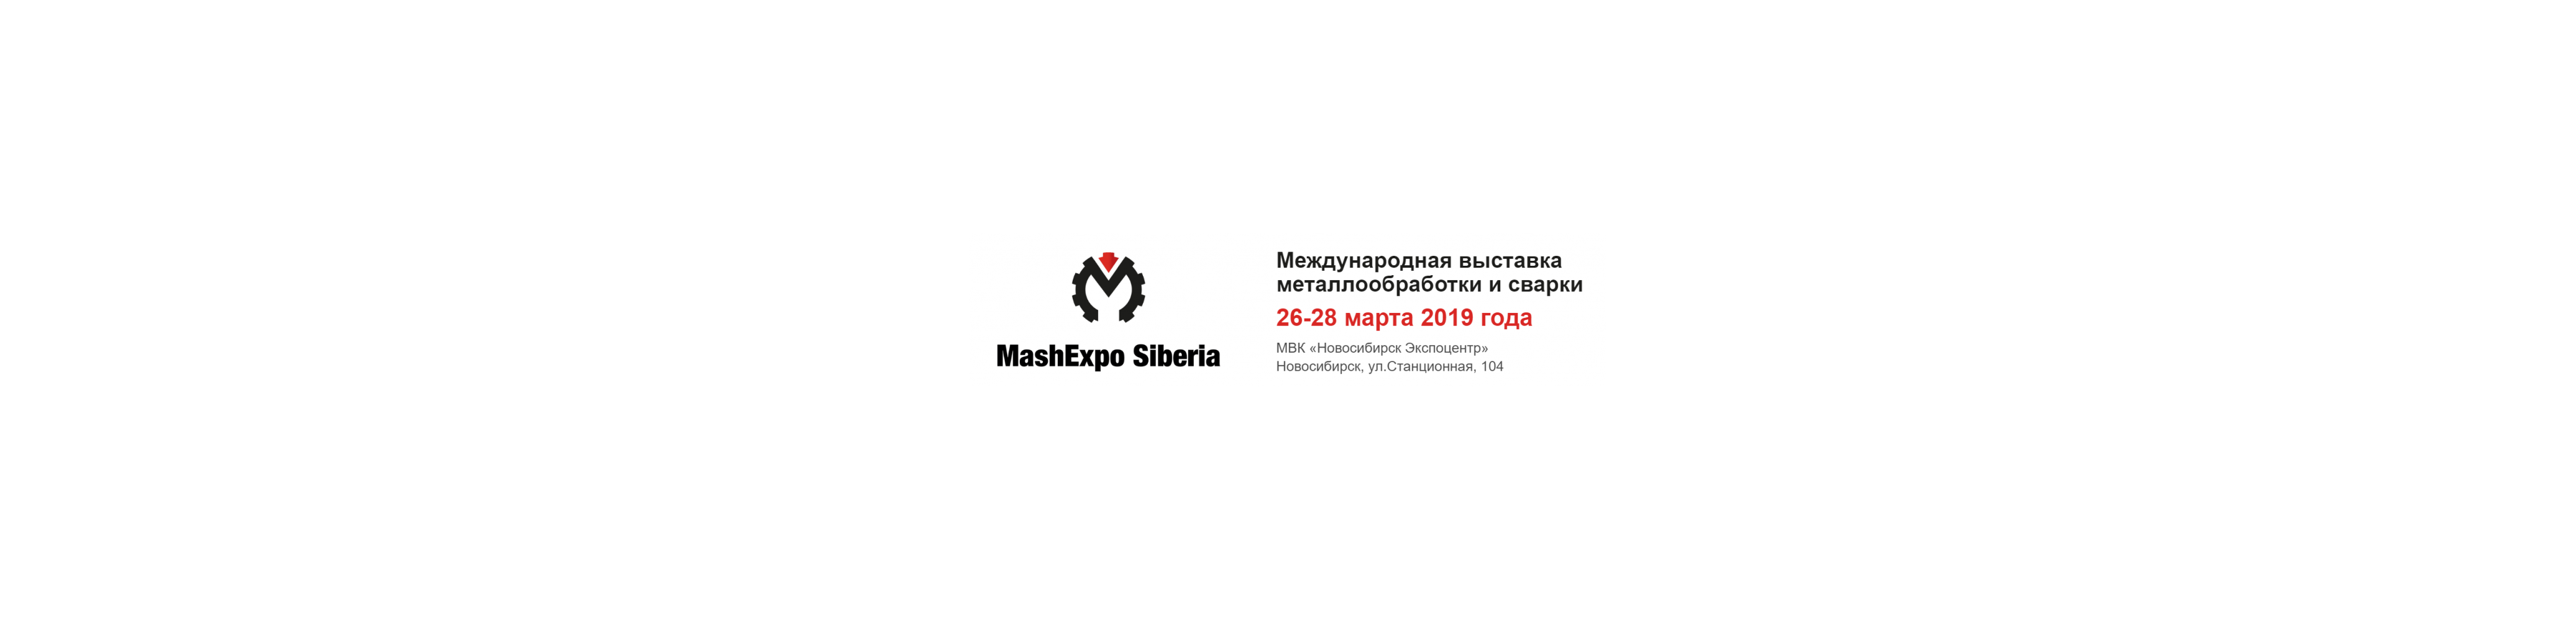 Выставка MashExpo Siberia 2019